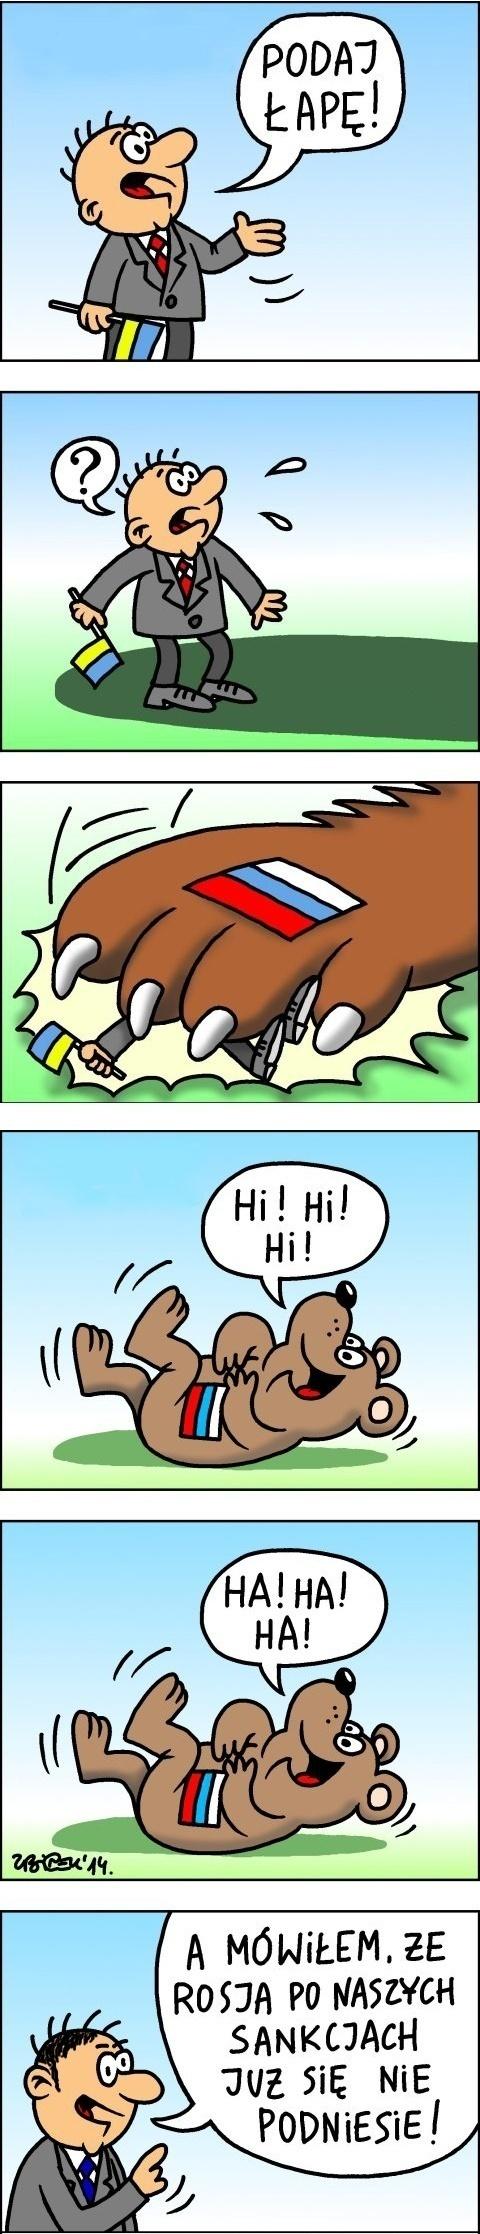 Rosja i sankcje UE